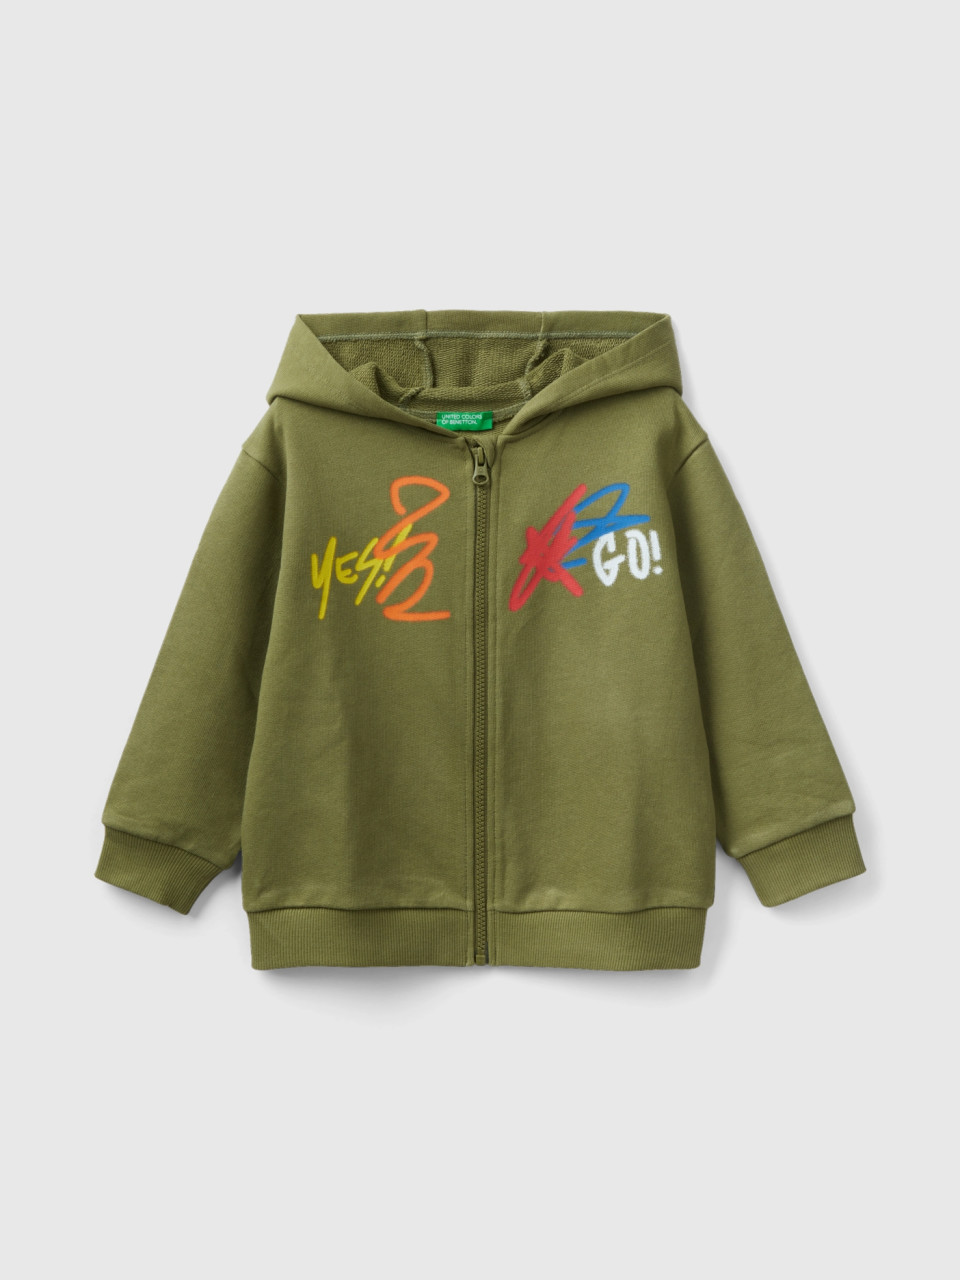 Benetton, Oversize Sweatshirt With Hood, Military Green, Kids